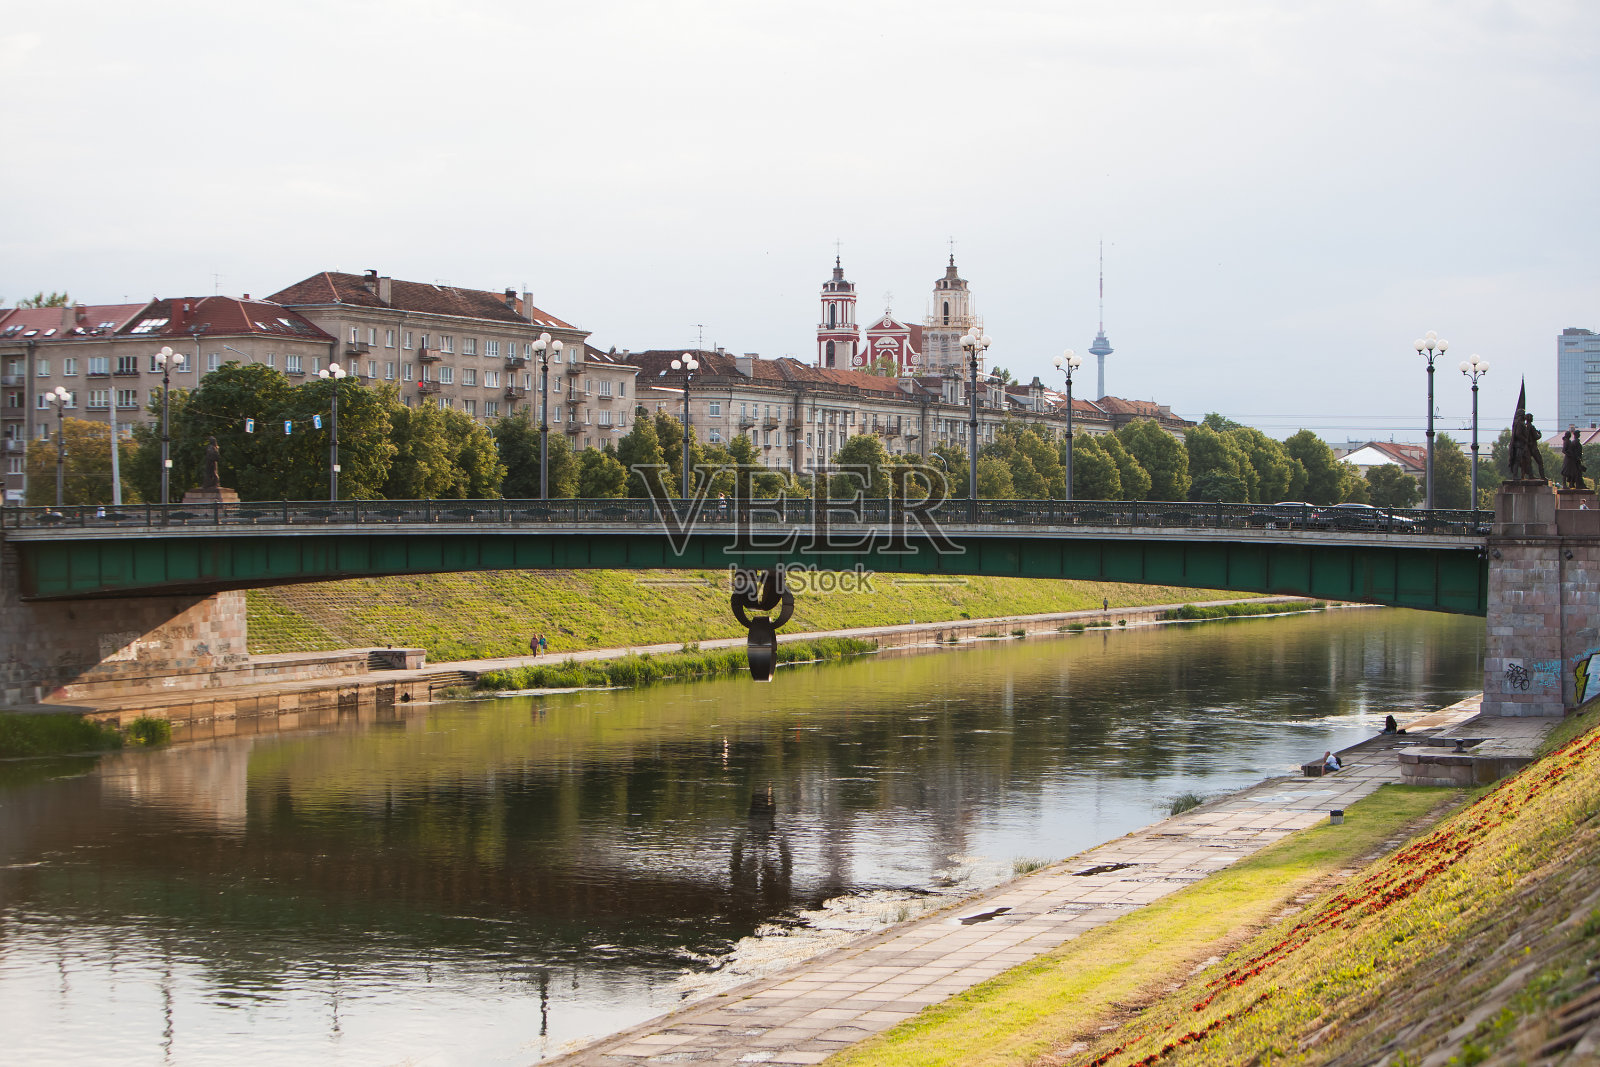 立陶宛维尔纽斯——2015年7月10日:绿桥照片摄影图片